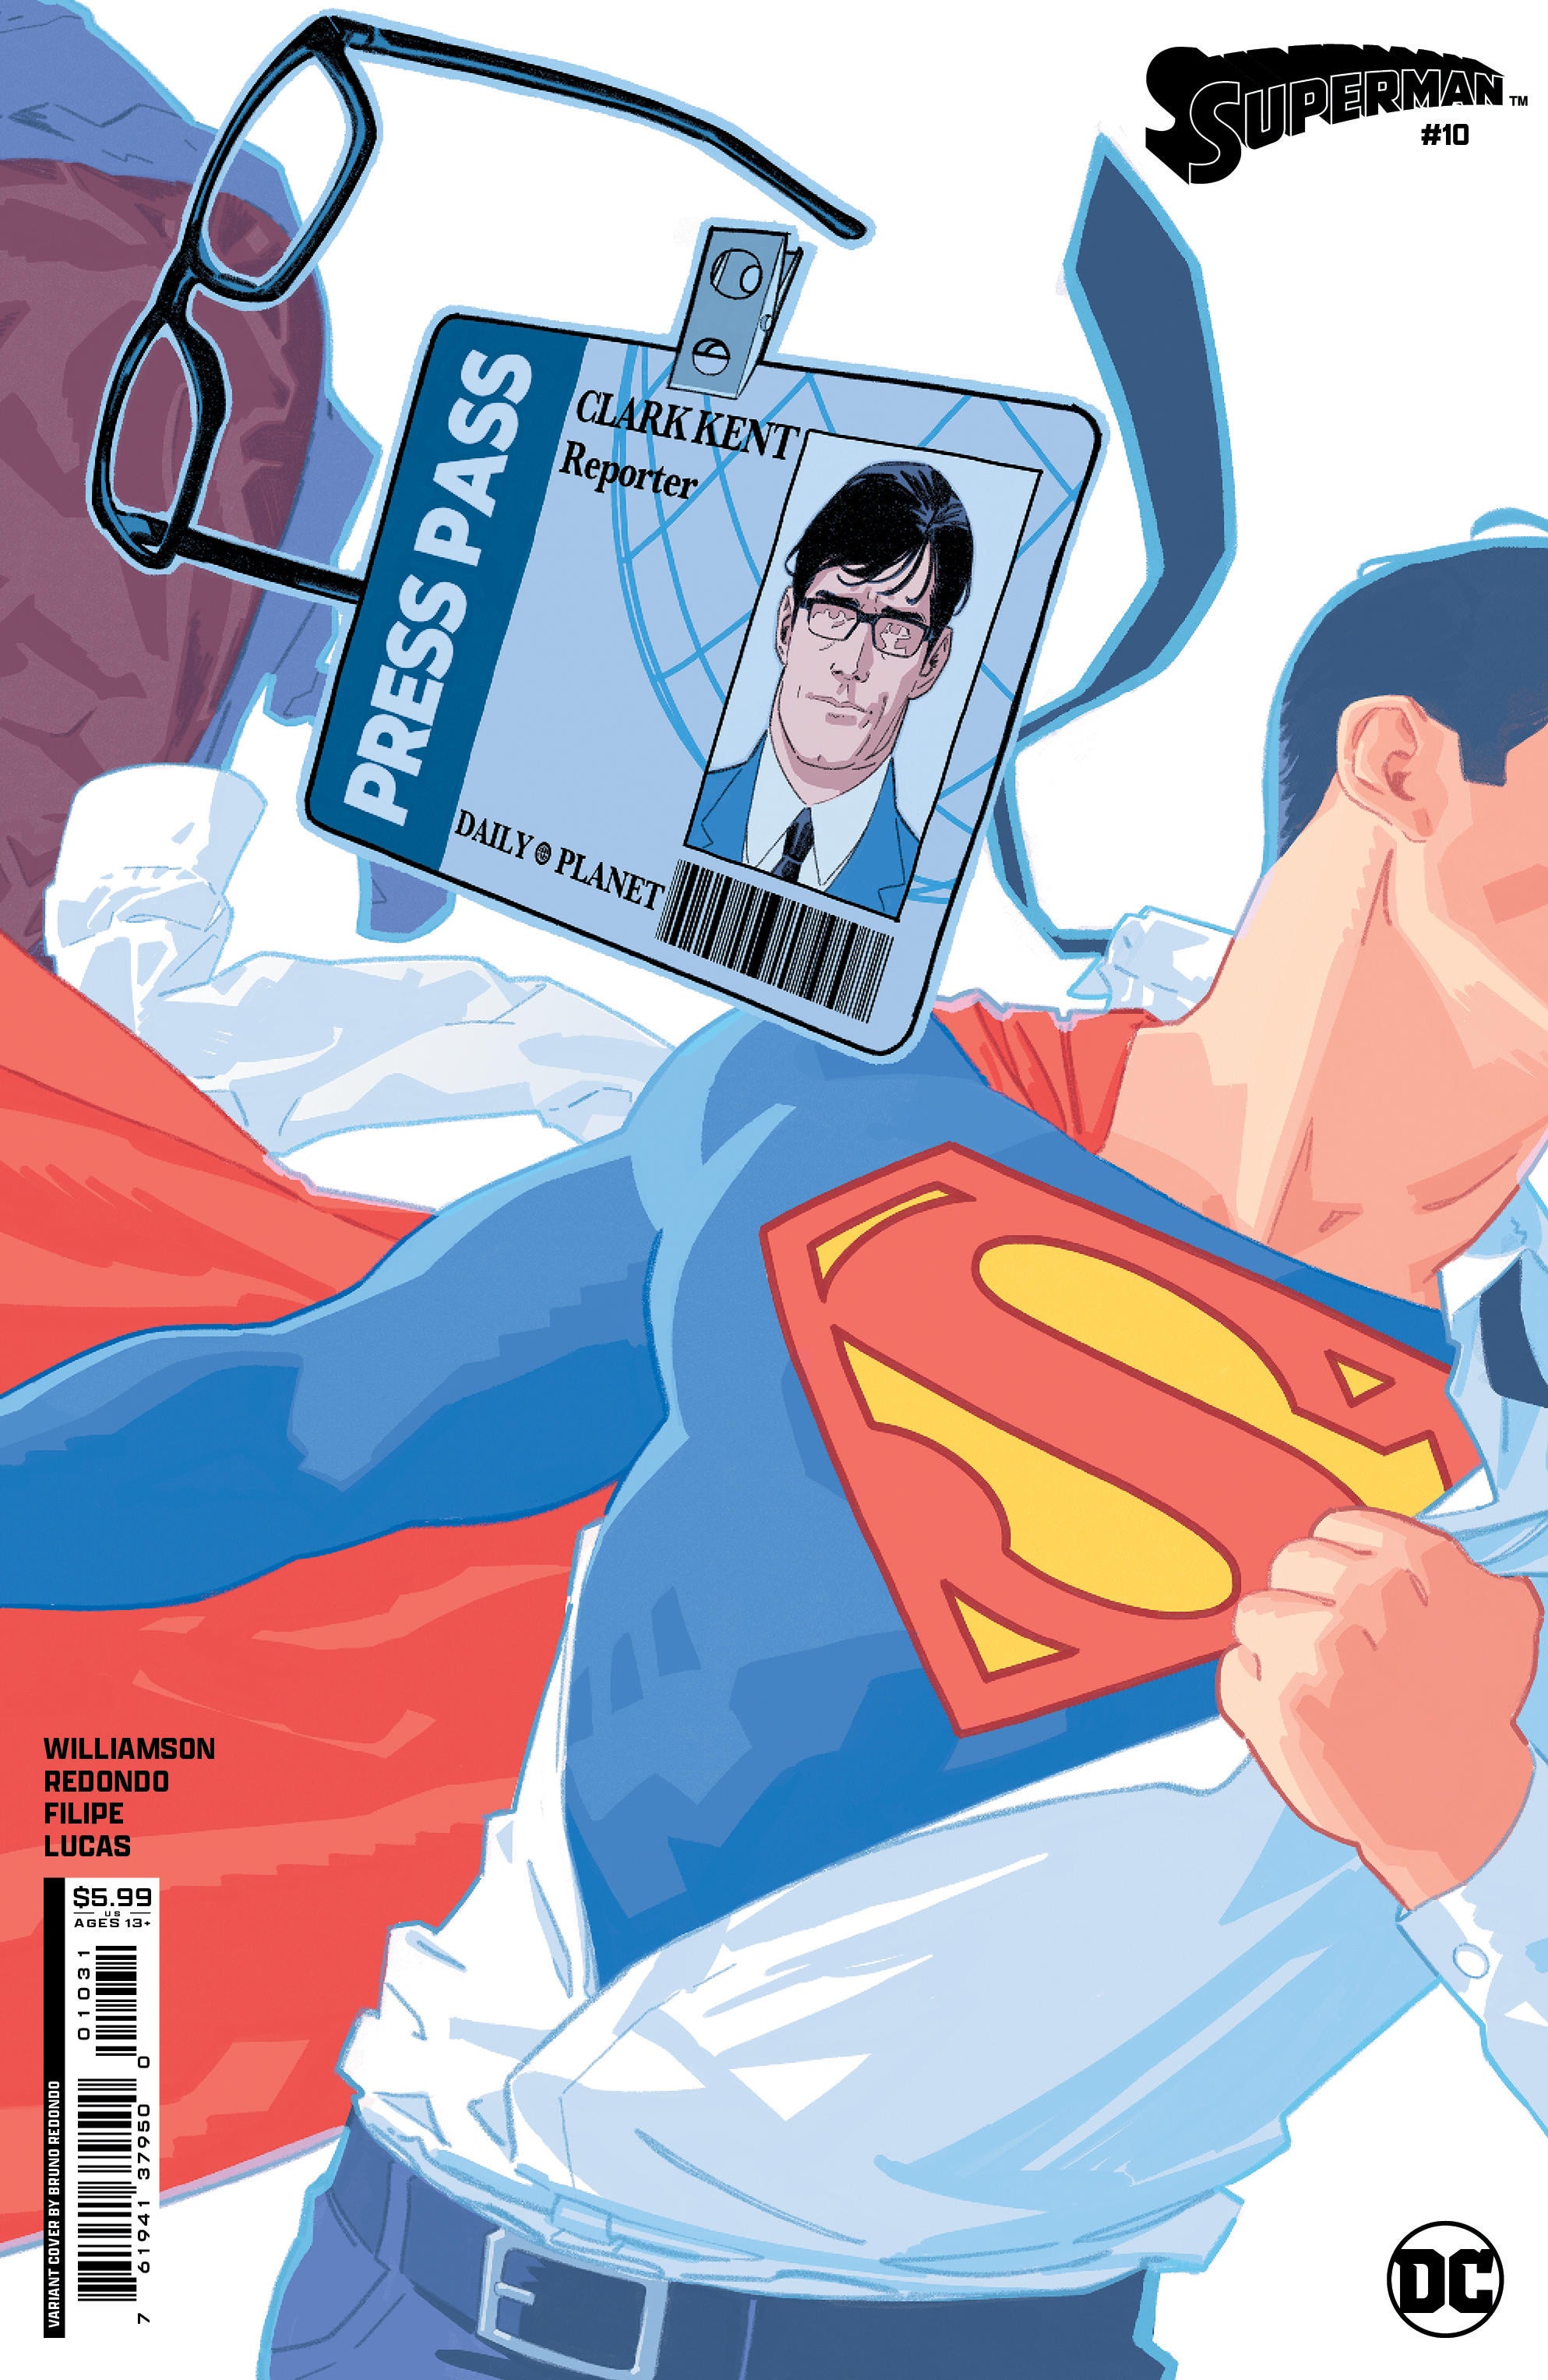 superman-10-variant-cover-01031.jpg